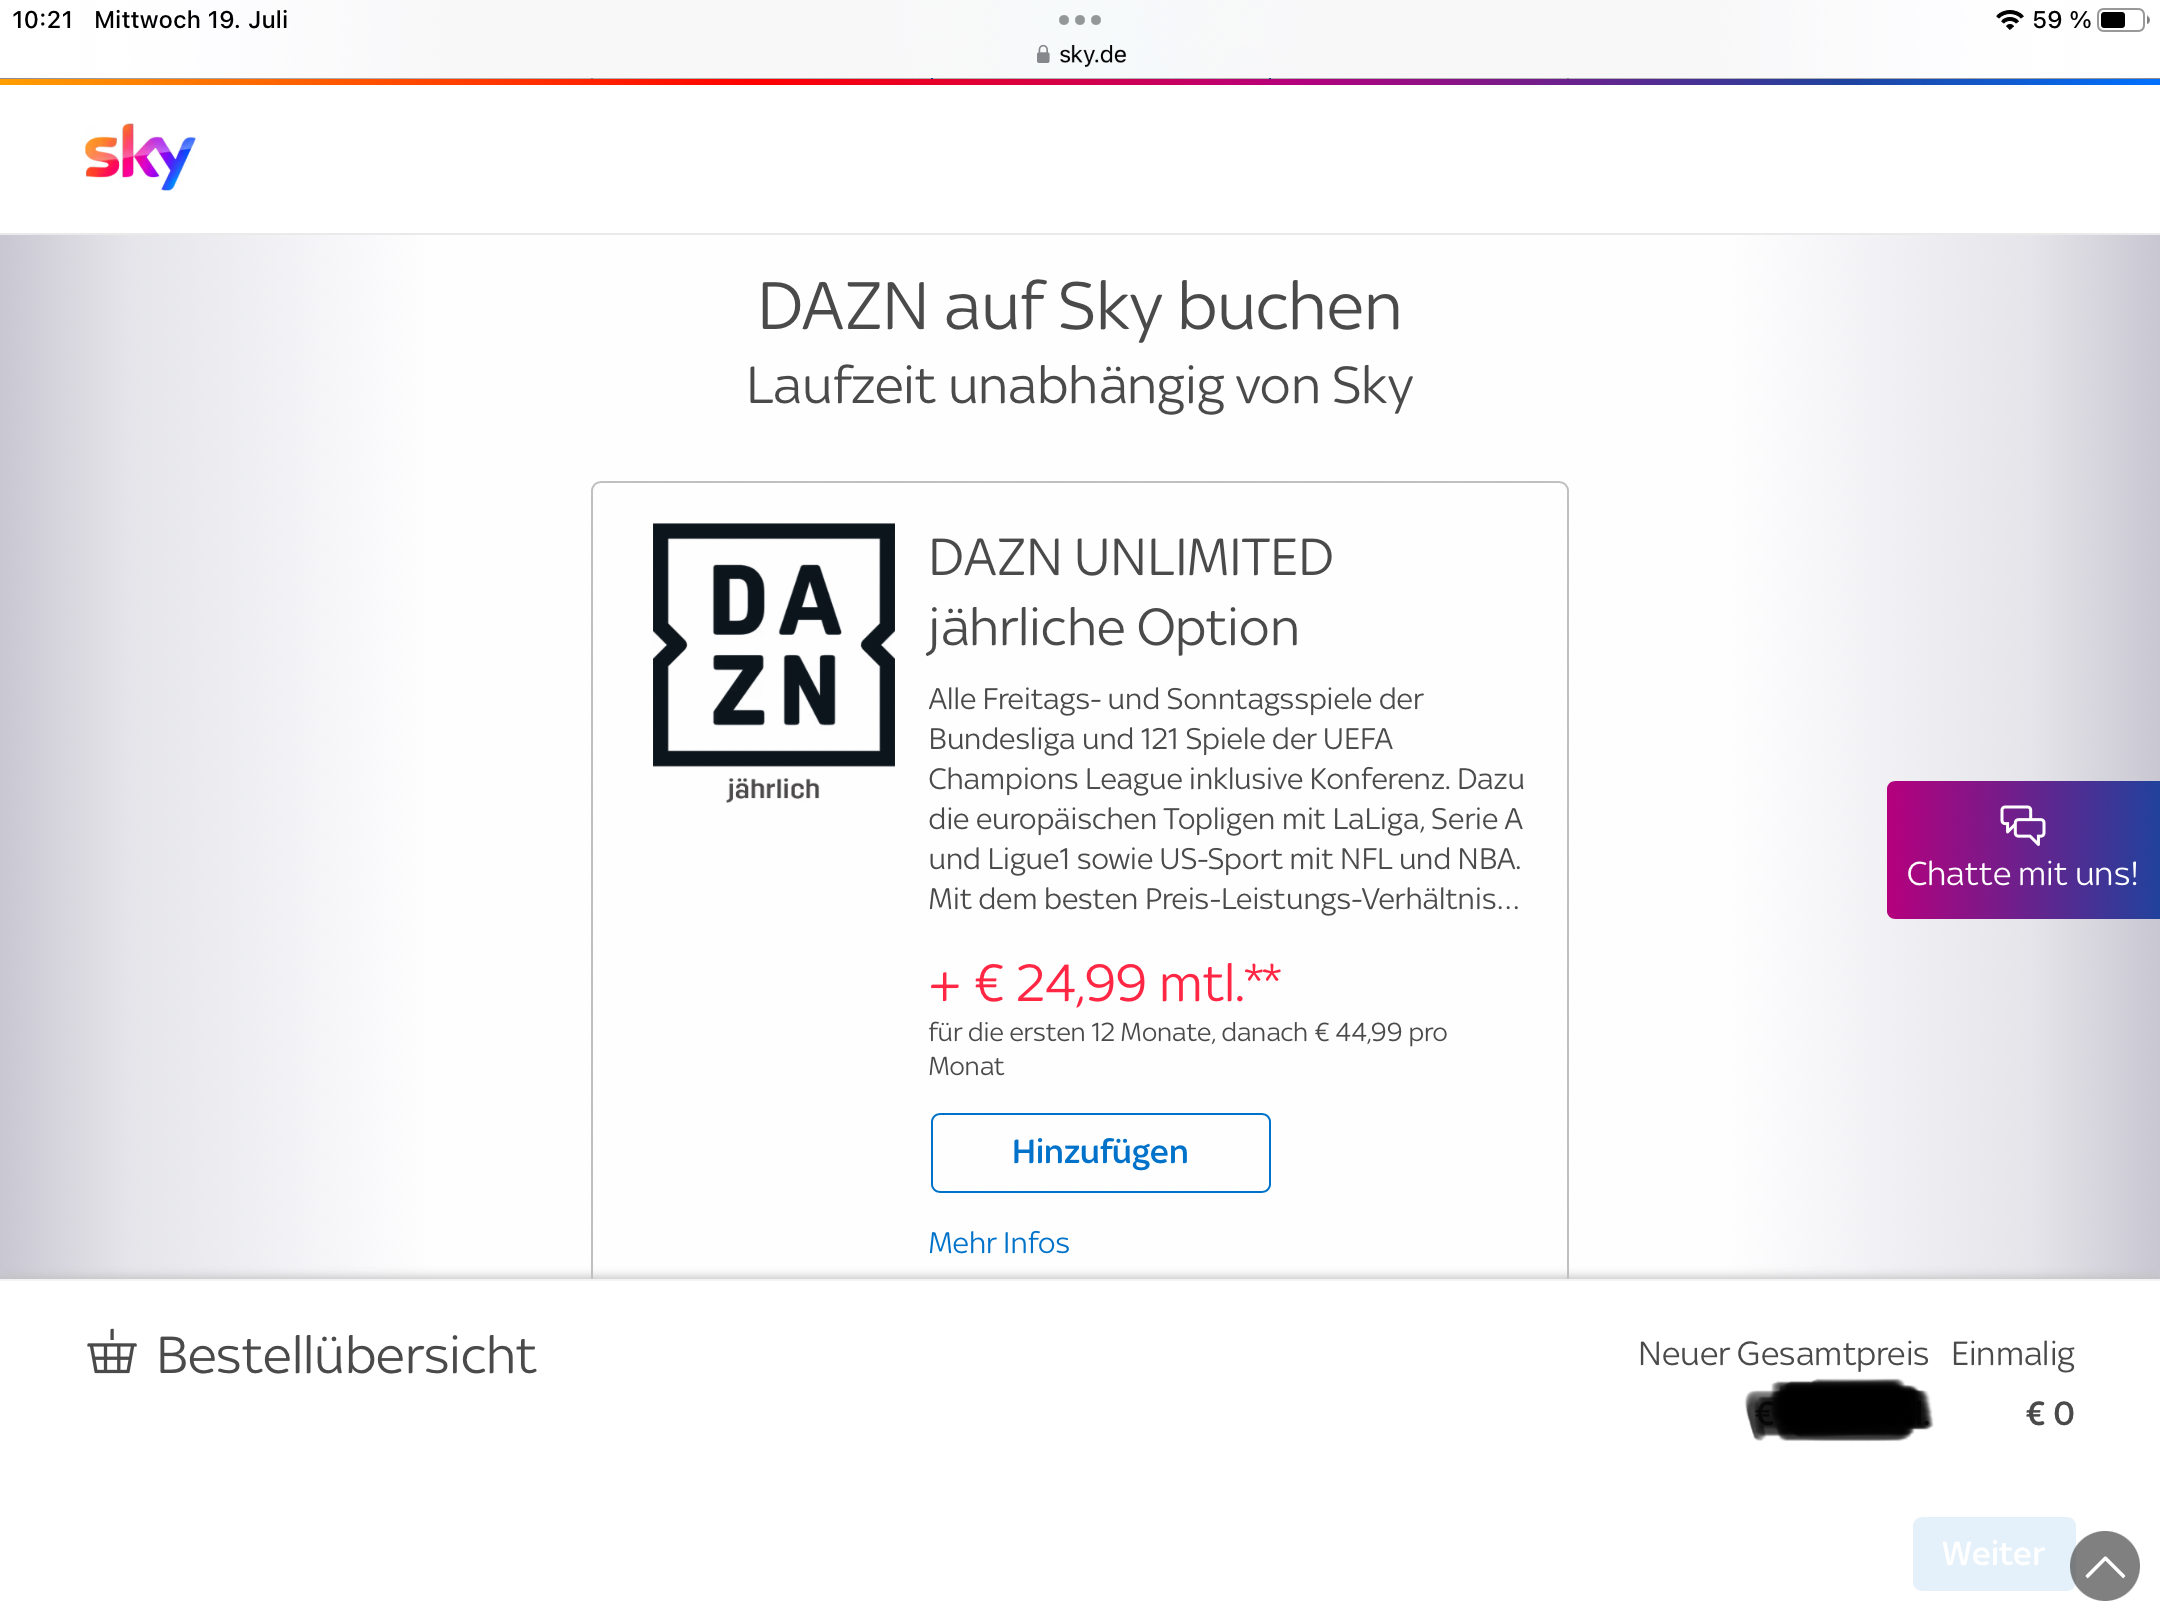 DAZN Unlimited gebucht, aber nun nur noch DAZN Sta..